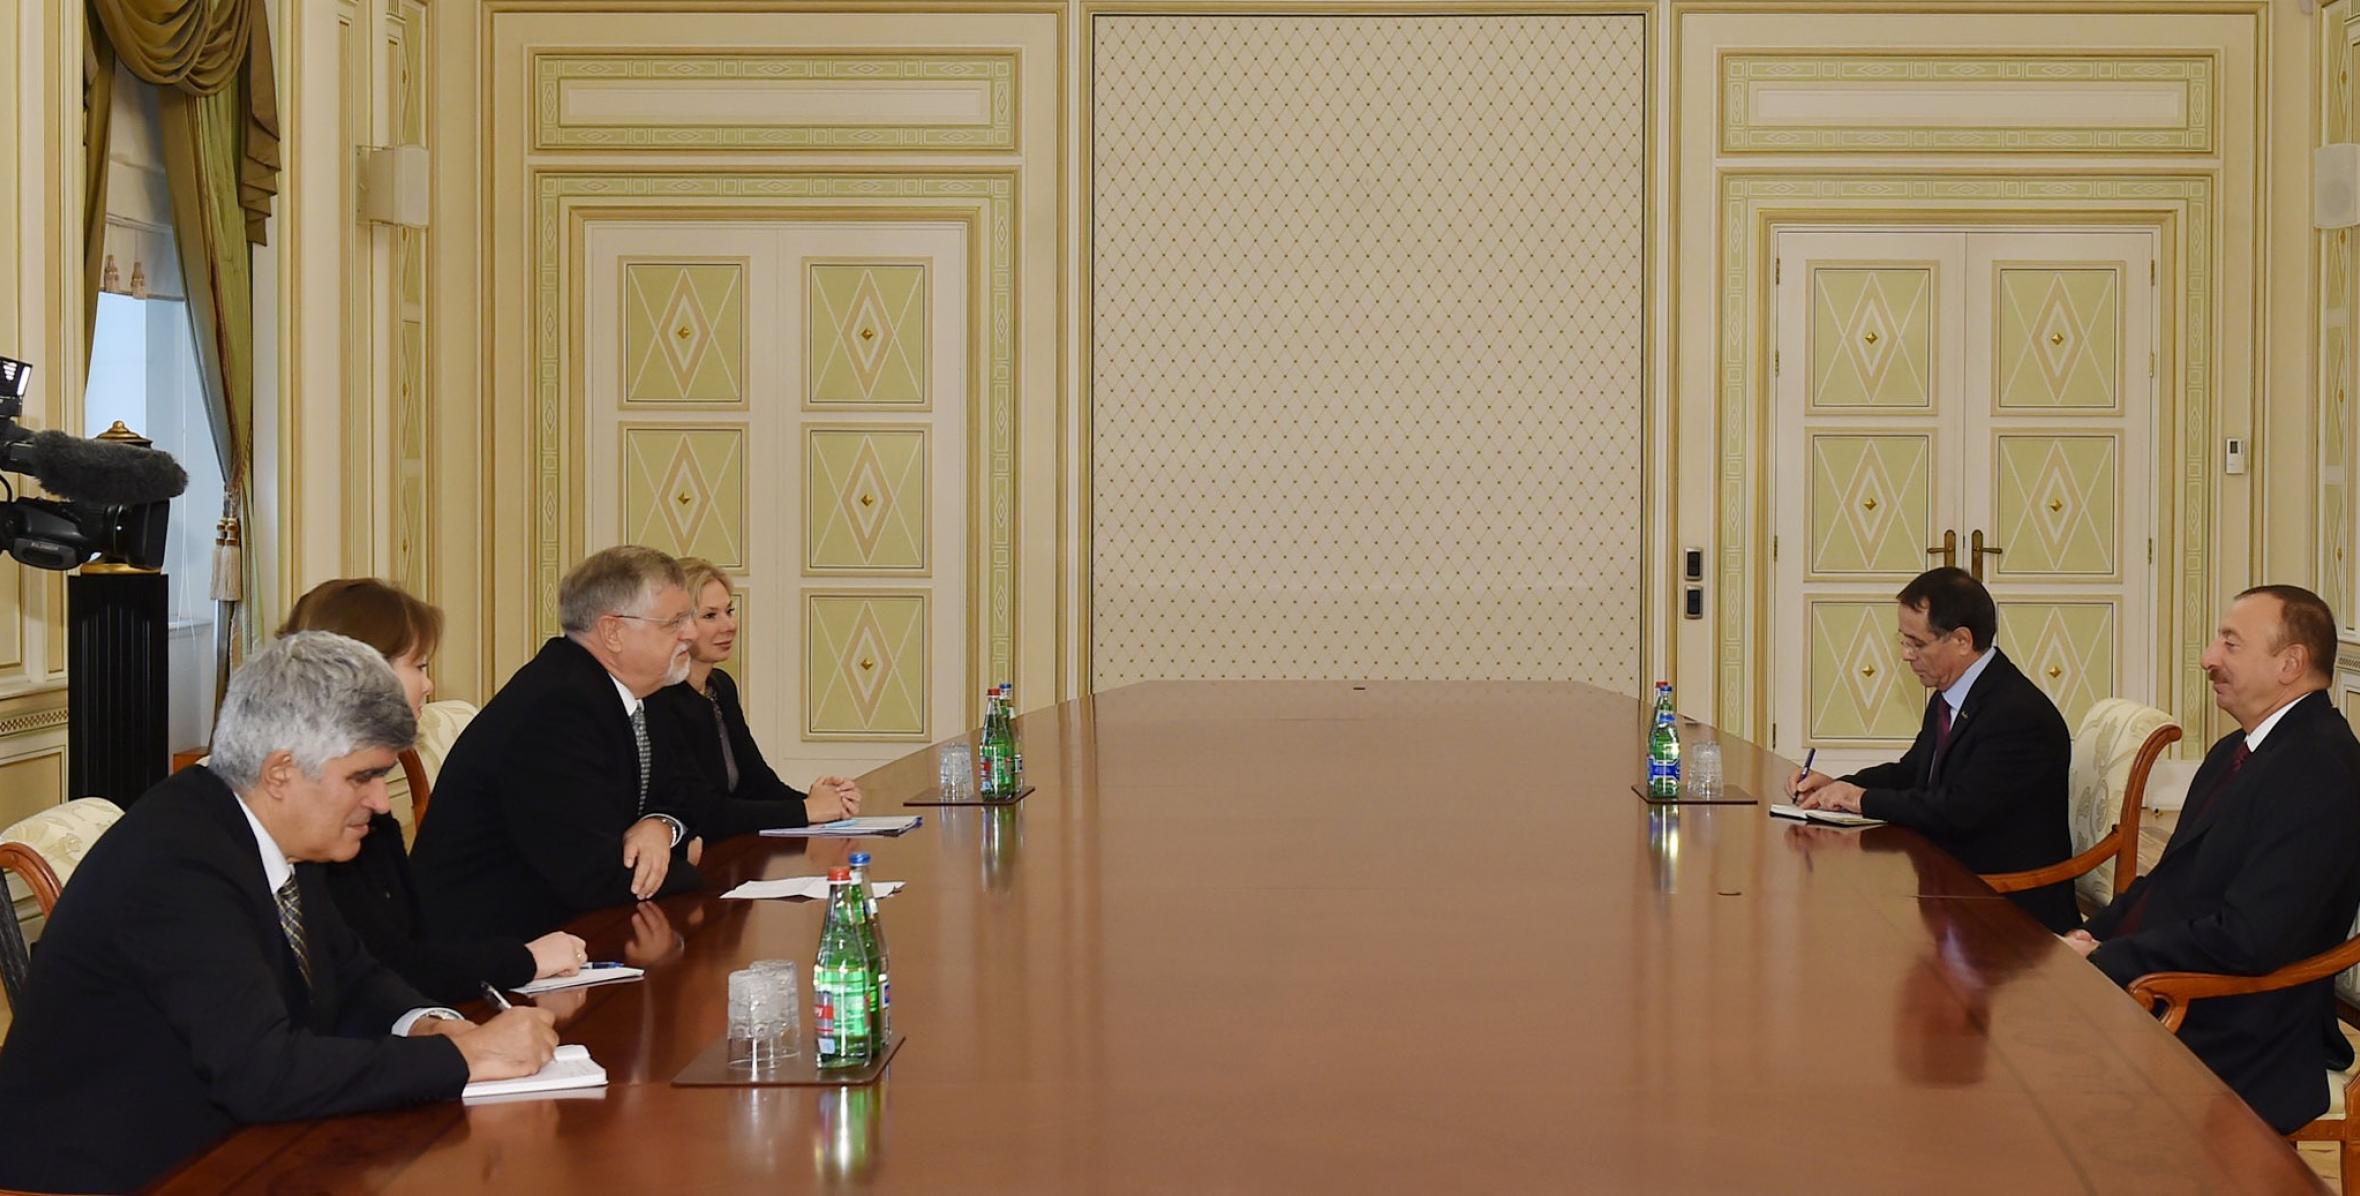 Ilham Aliyev received the EU Special Representative for the South Caucasus